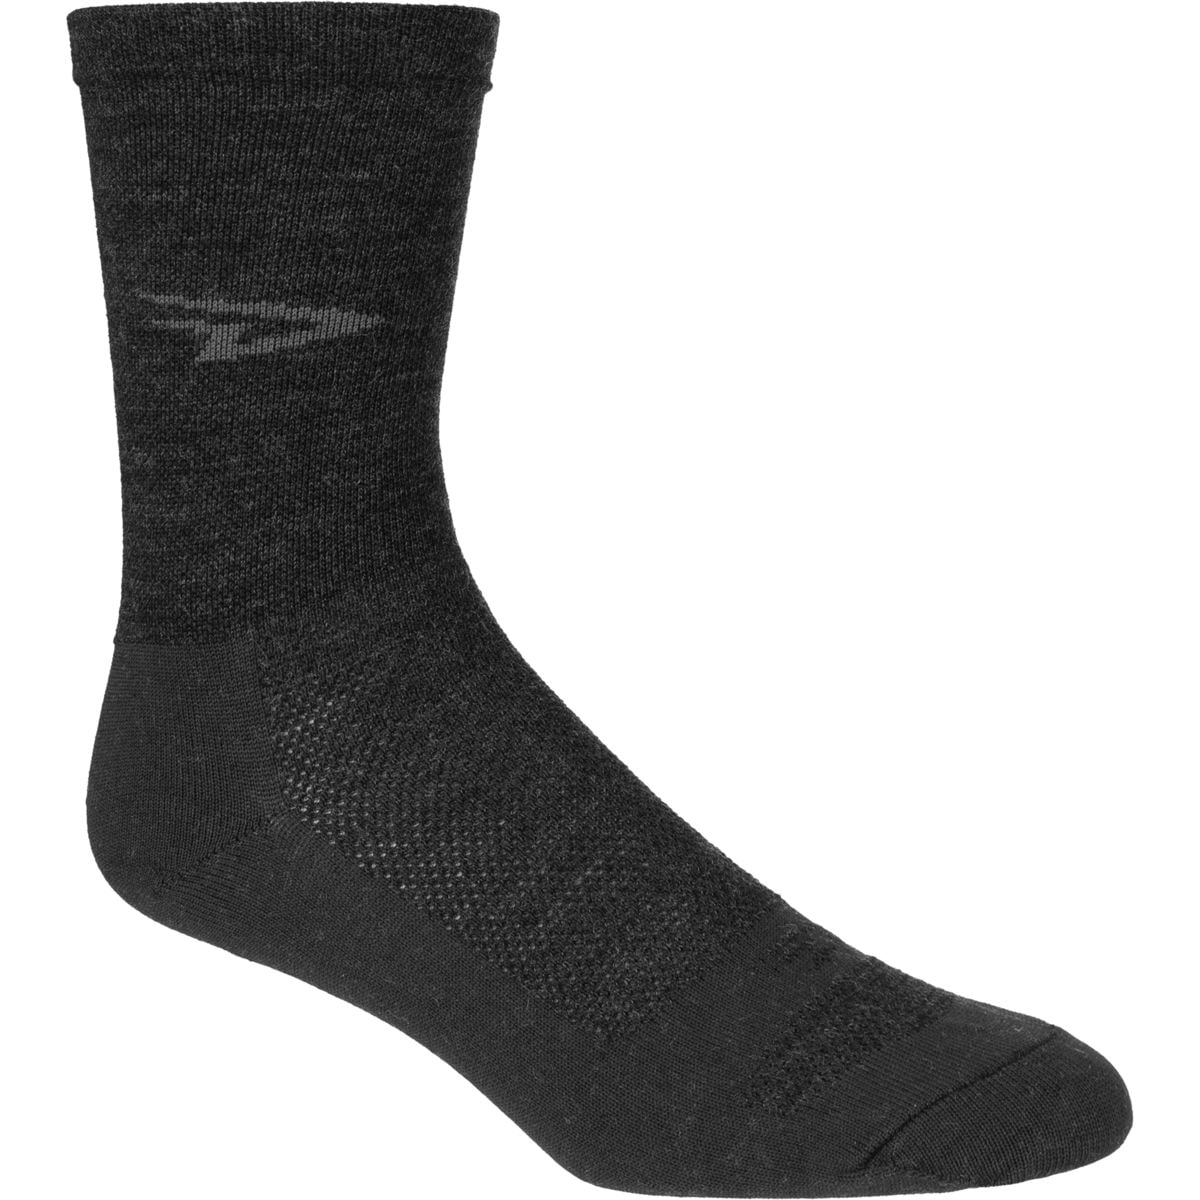 DeFeet Wooleator High Top 5in Socks Mens